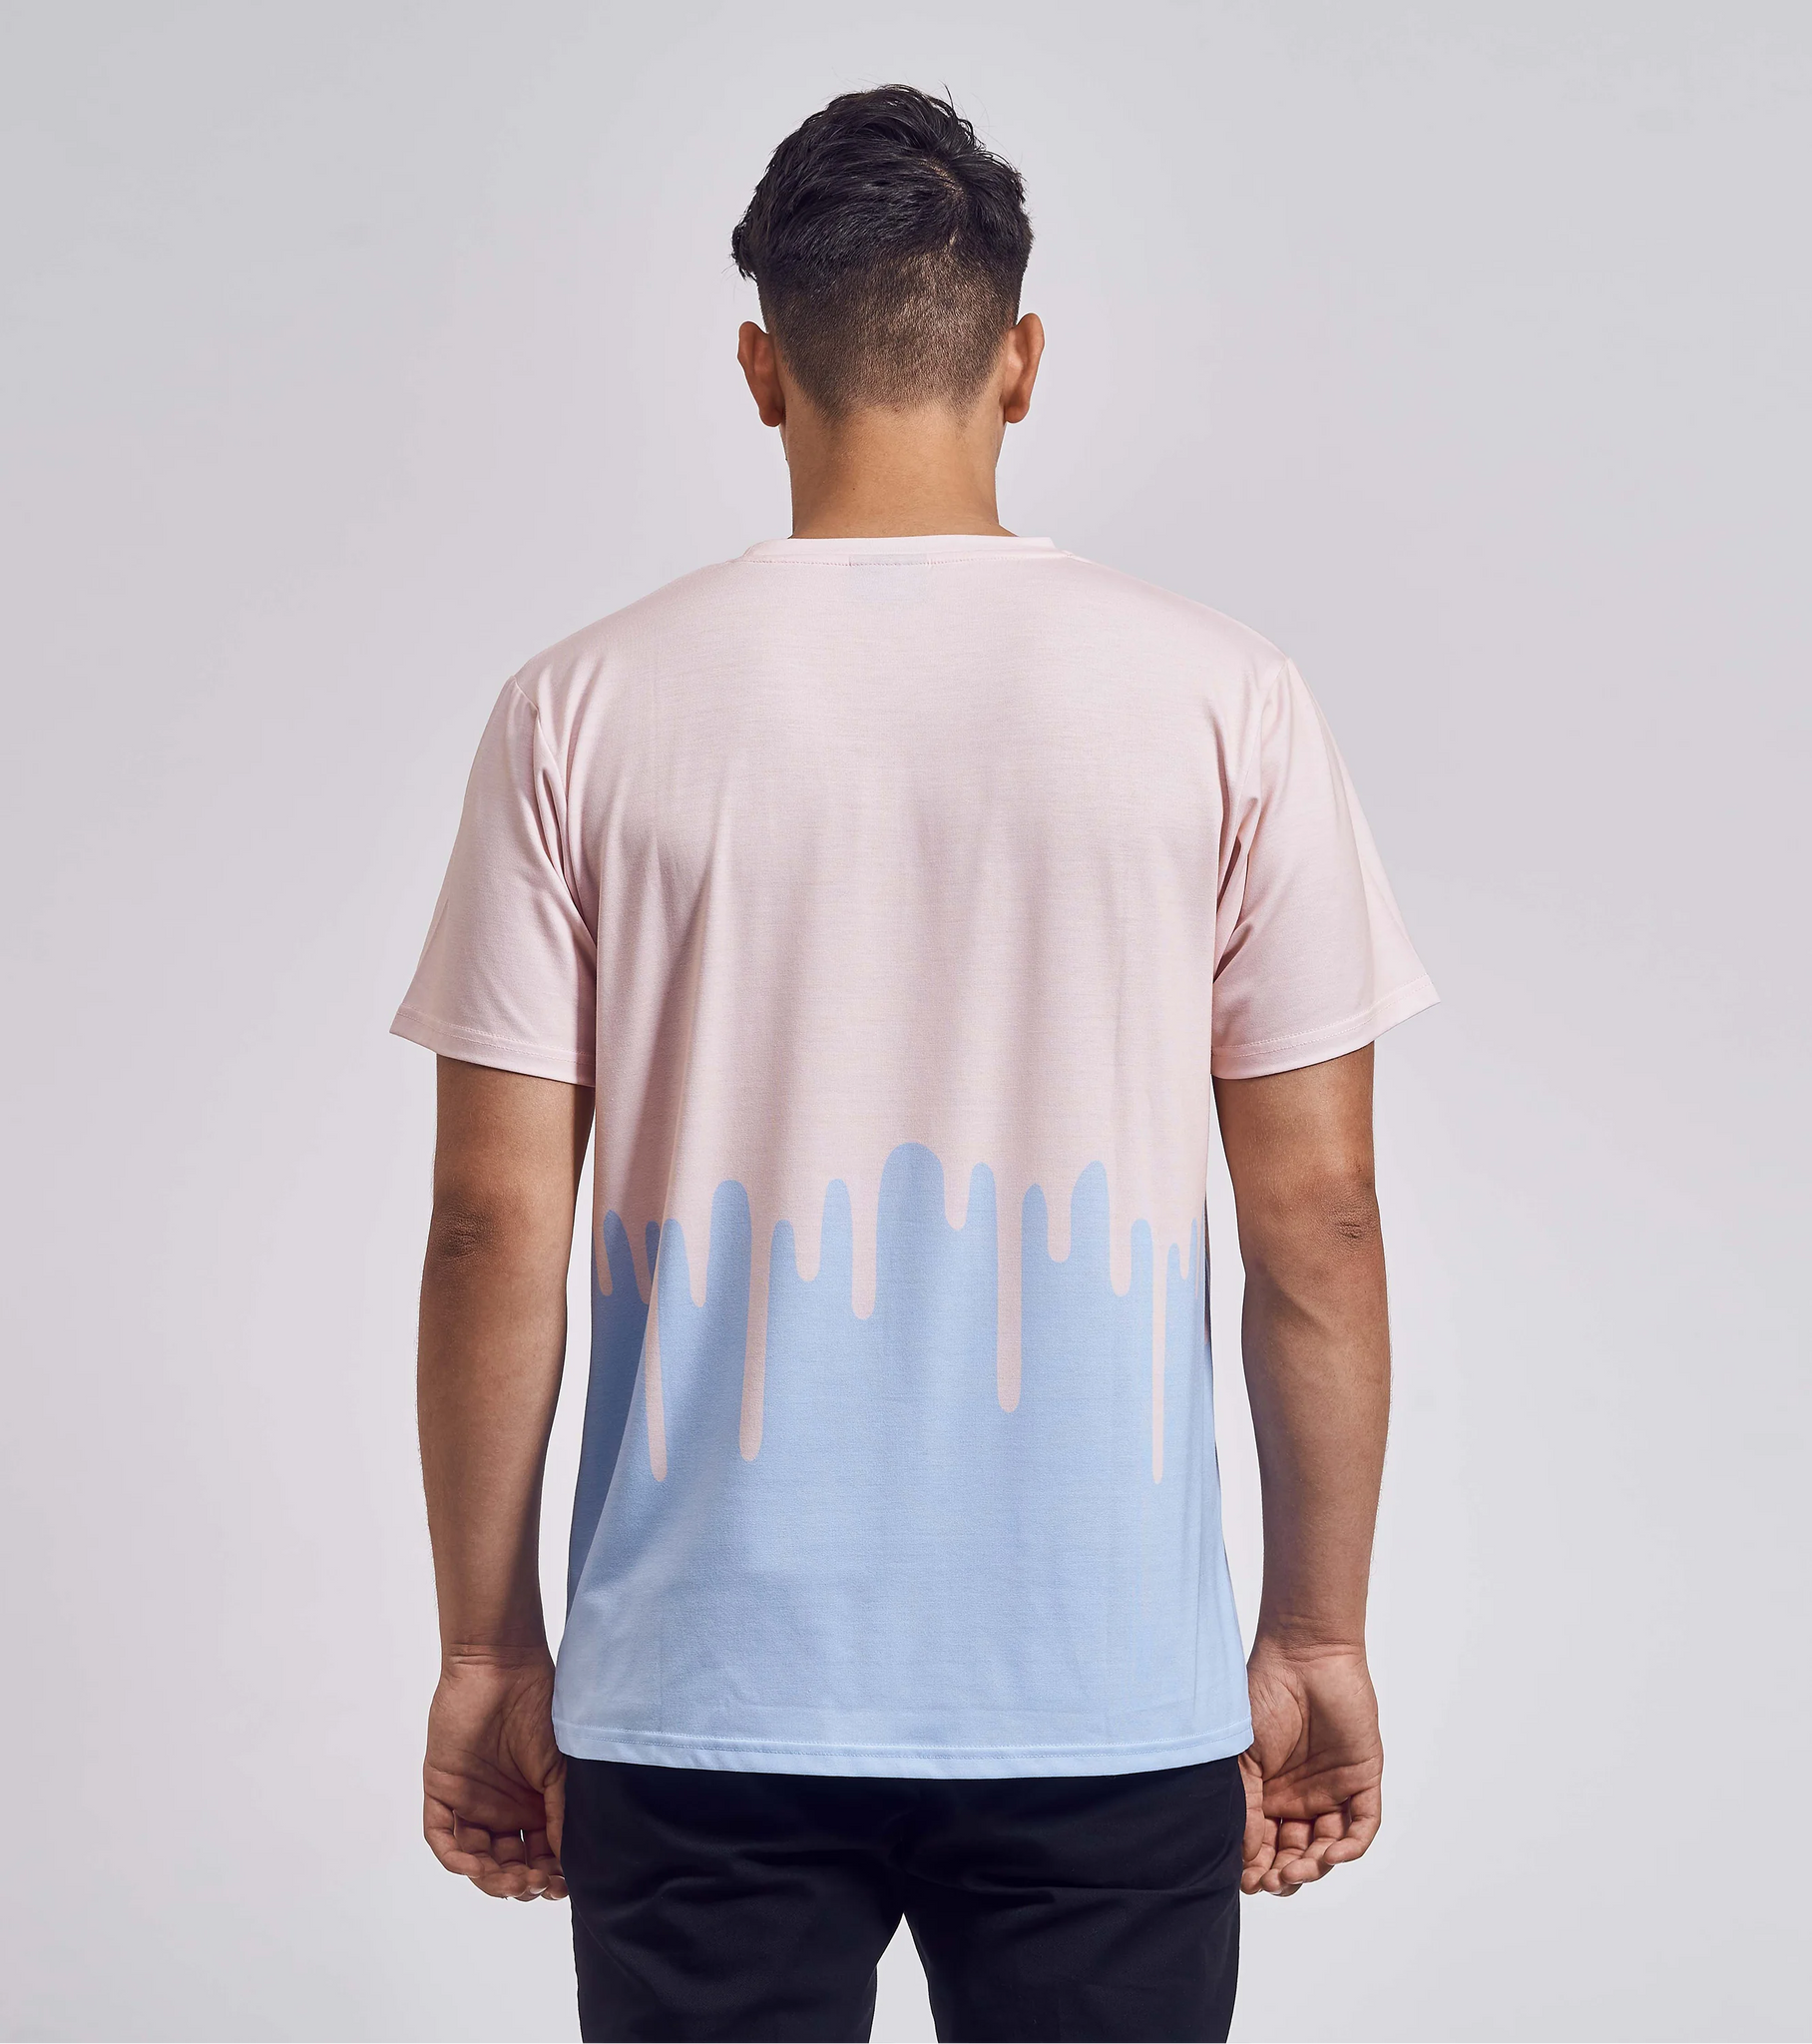 Schei** Boxer - Pinker Farbdrip T-Shirt